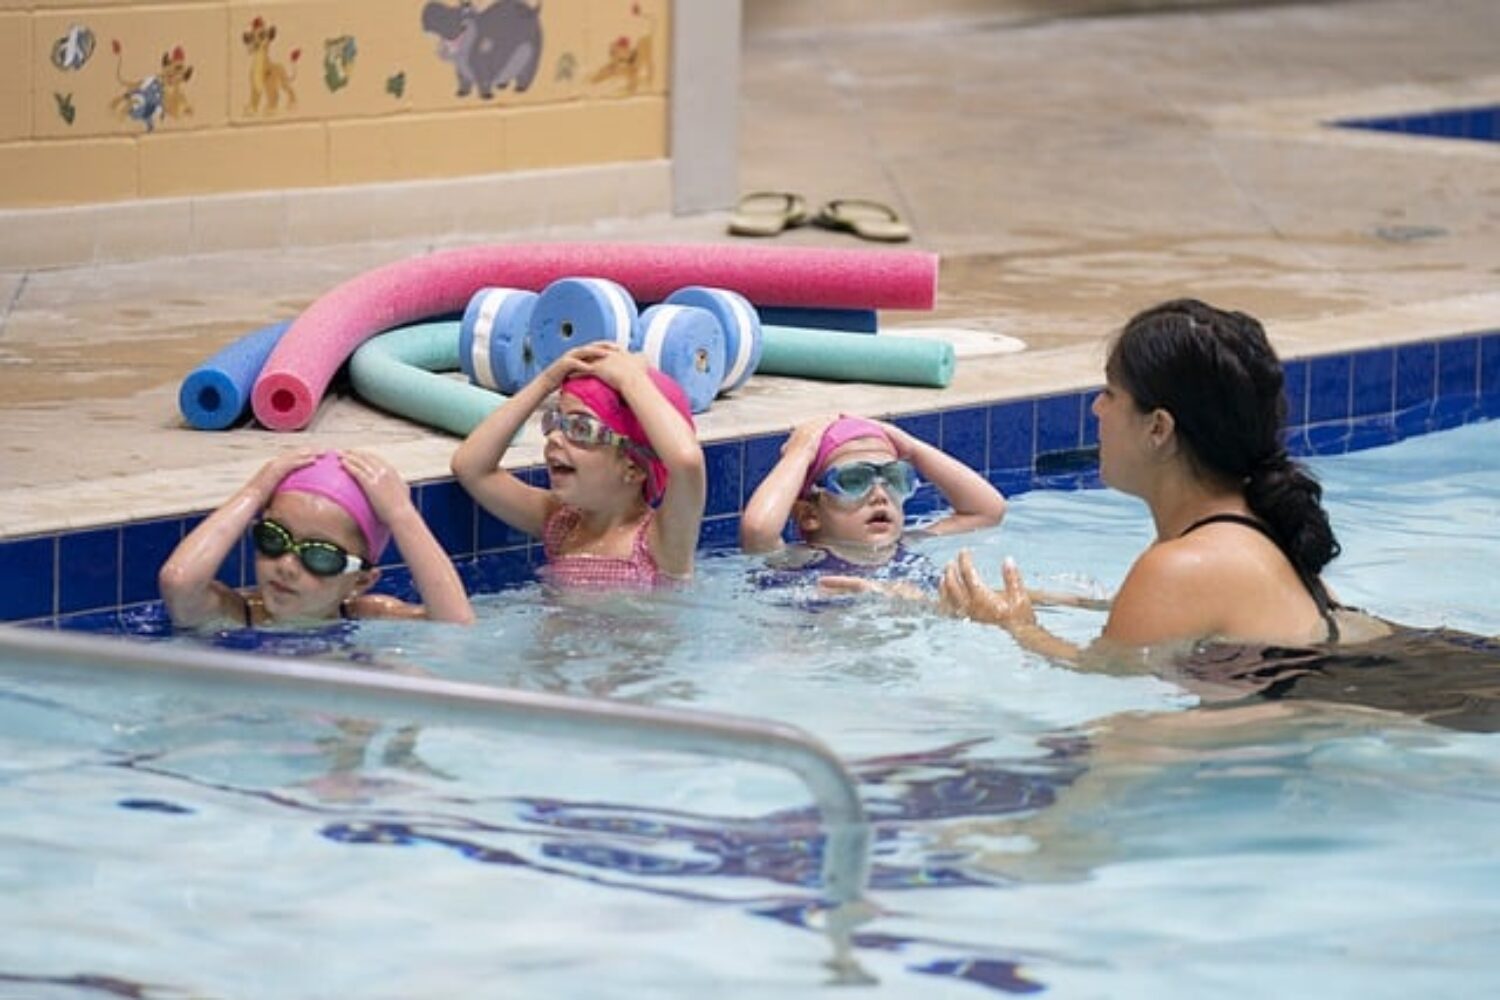 Schwimmen lernen in den Pfingstferien! Kostenfreie Kurse für Kinder ab 6 Jahren im Hallenbad Heidelberg-Hasenleiser! Anmeldung ab 24. April